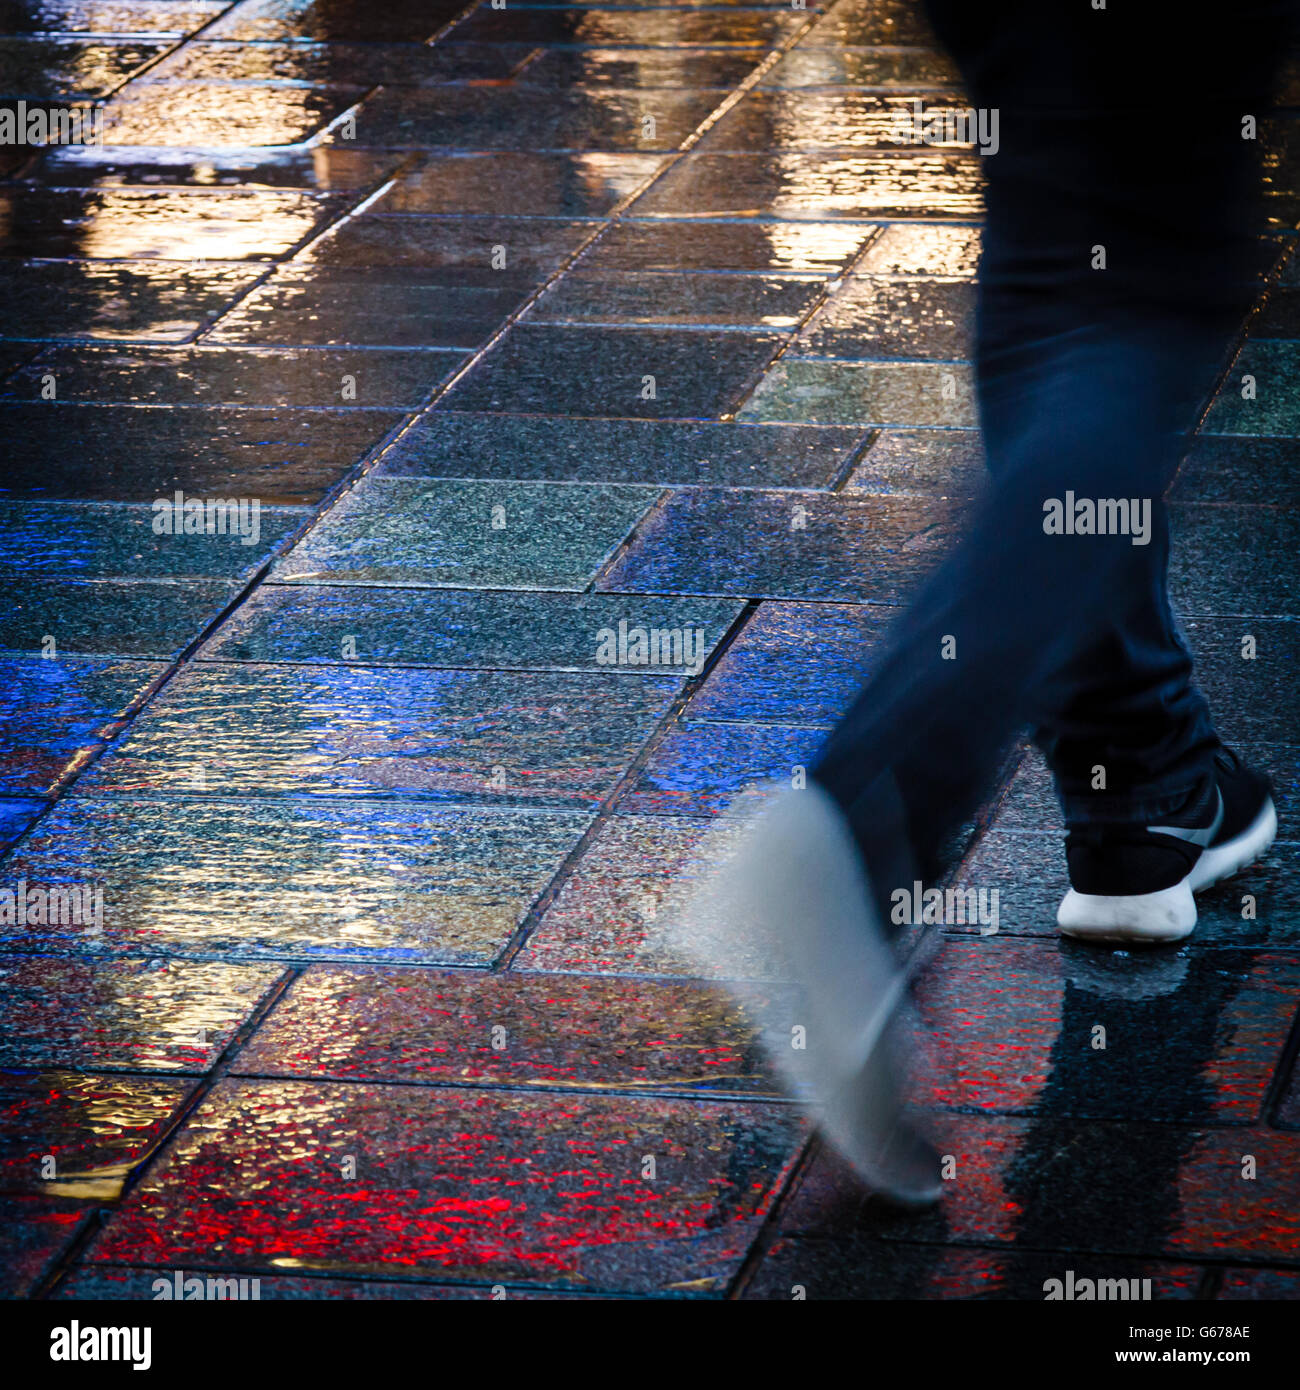 Passeggiando per le luci al neon sotto la pioggia Foto Stock